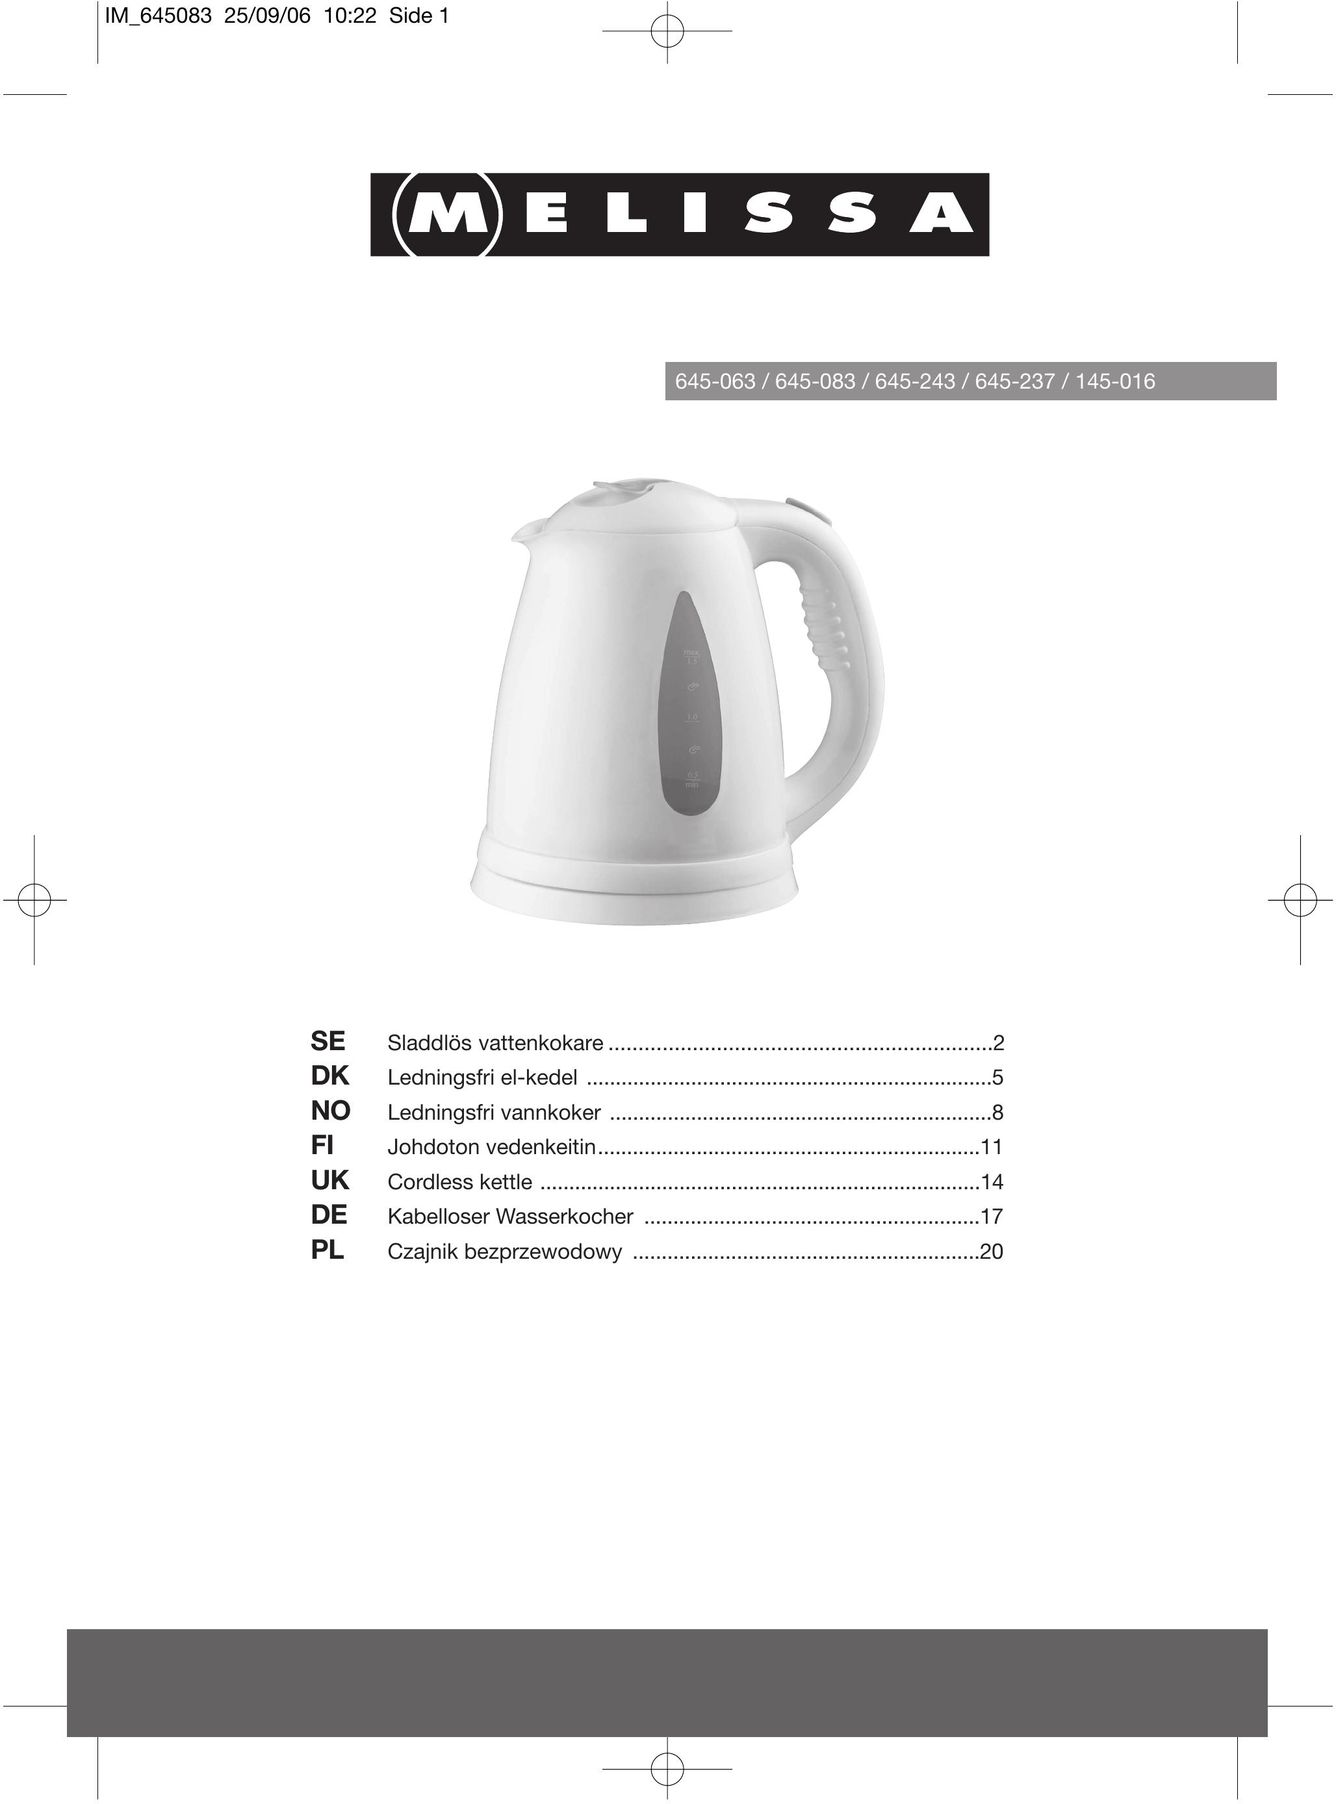 Melissa 645-243 Hot Beverage Maker User Manual